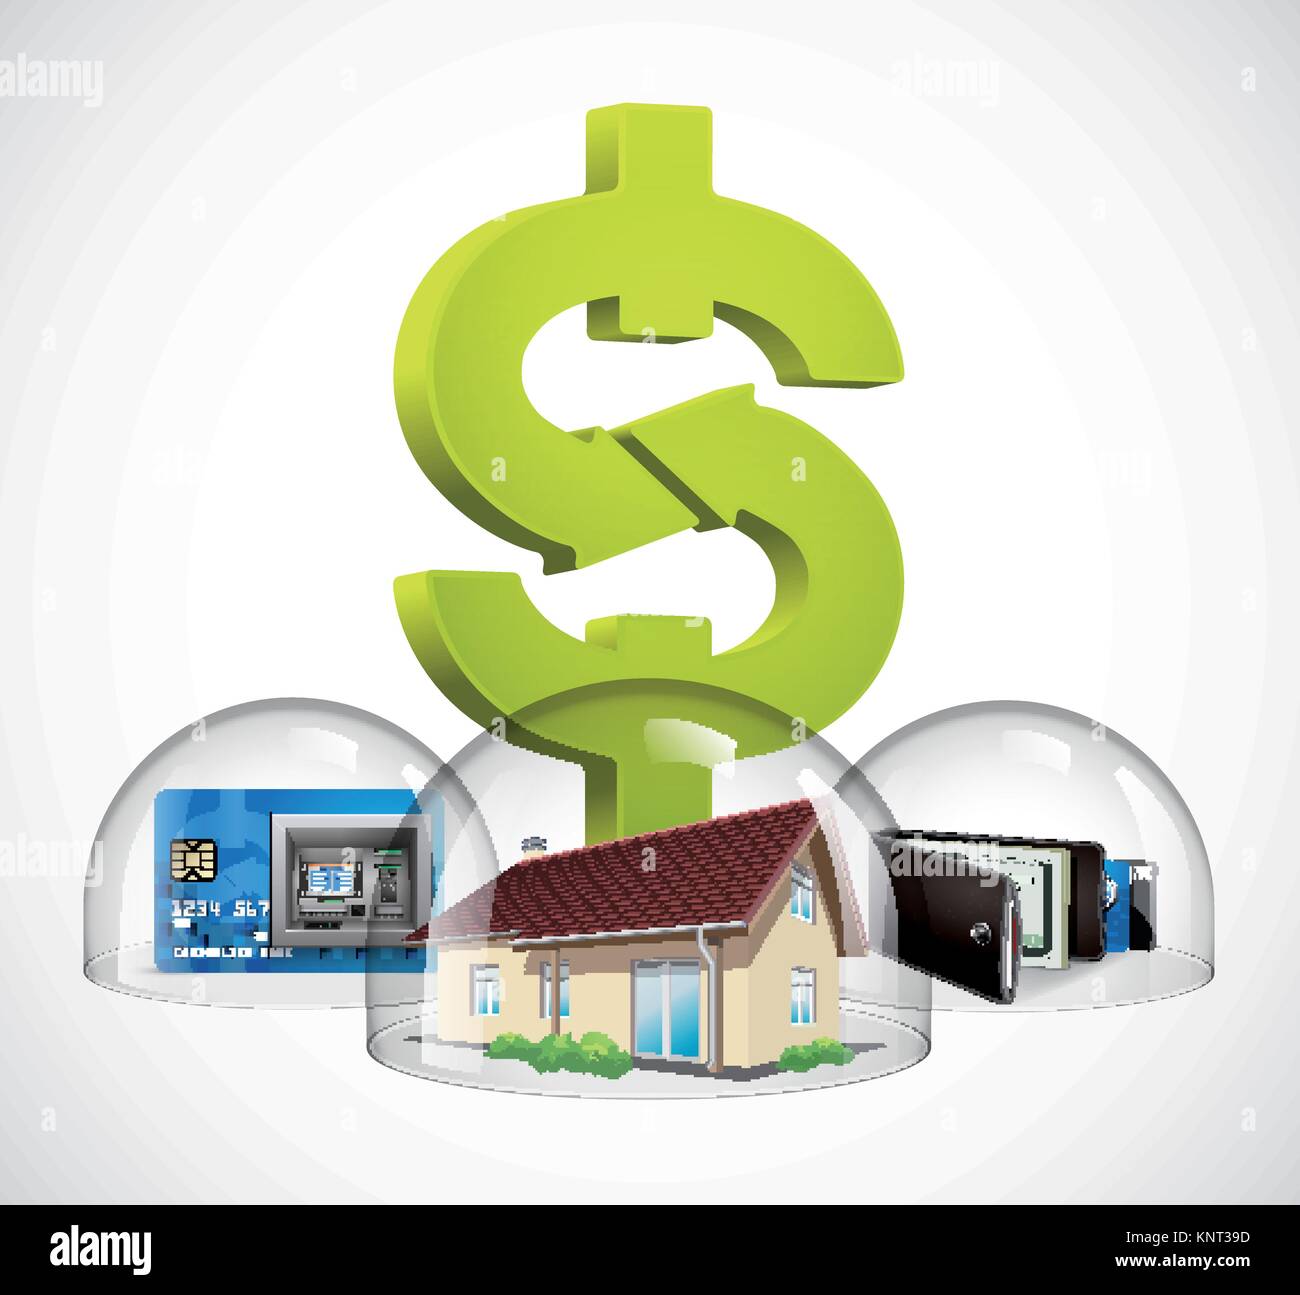 Cupola di vetro - il concetto di protezione - casa e denaro - stock illustrazione Illustrazione Vettoriale